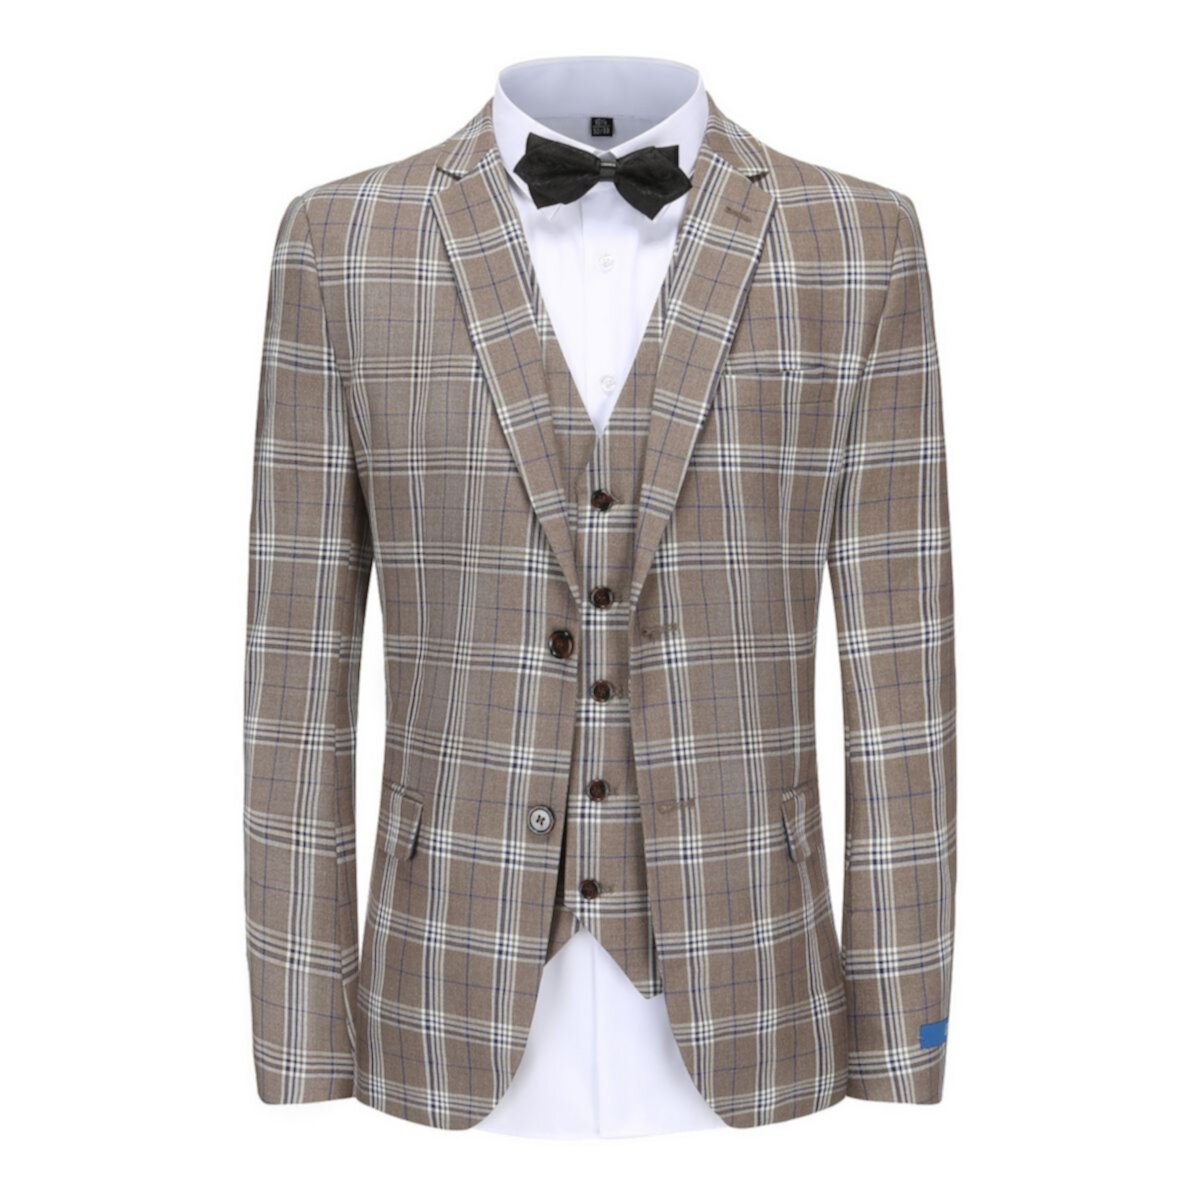 Men's 3-piece Checkered Plaid Slim Fit Suit Braveman